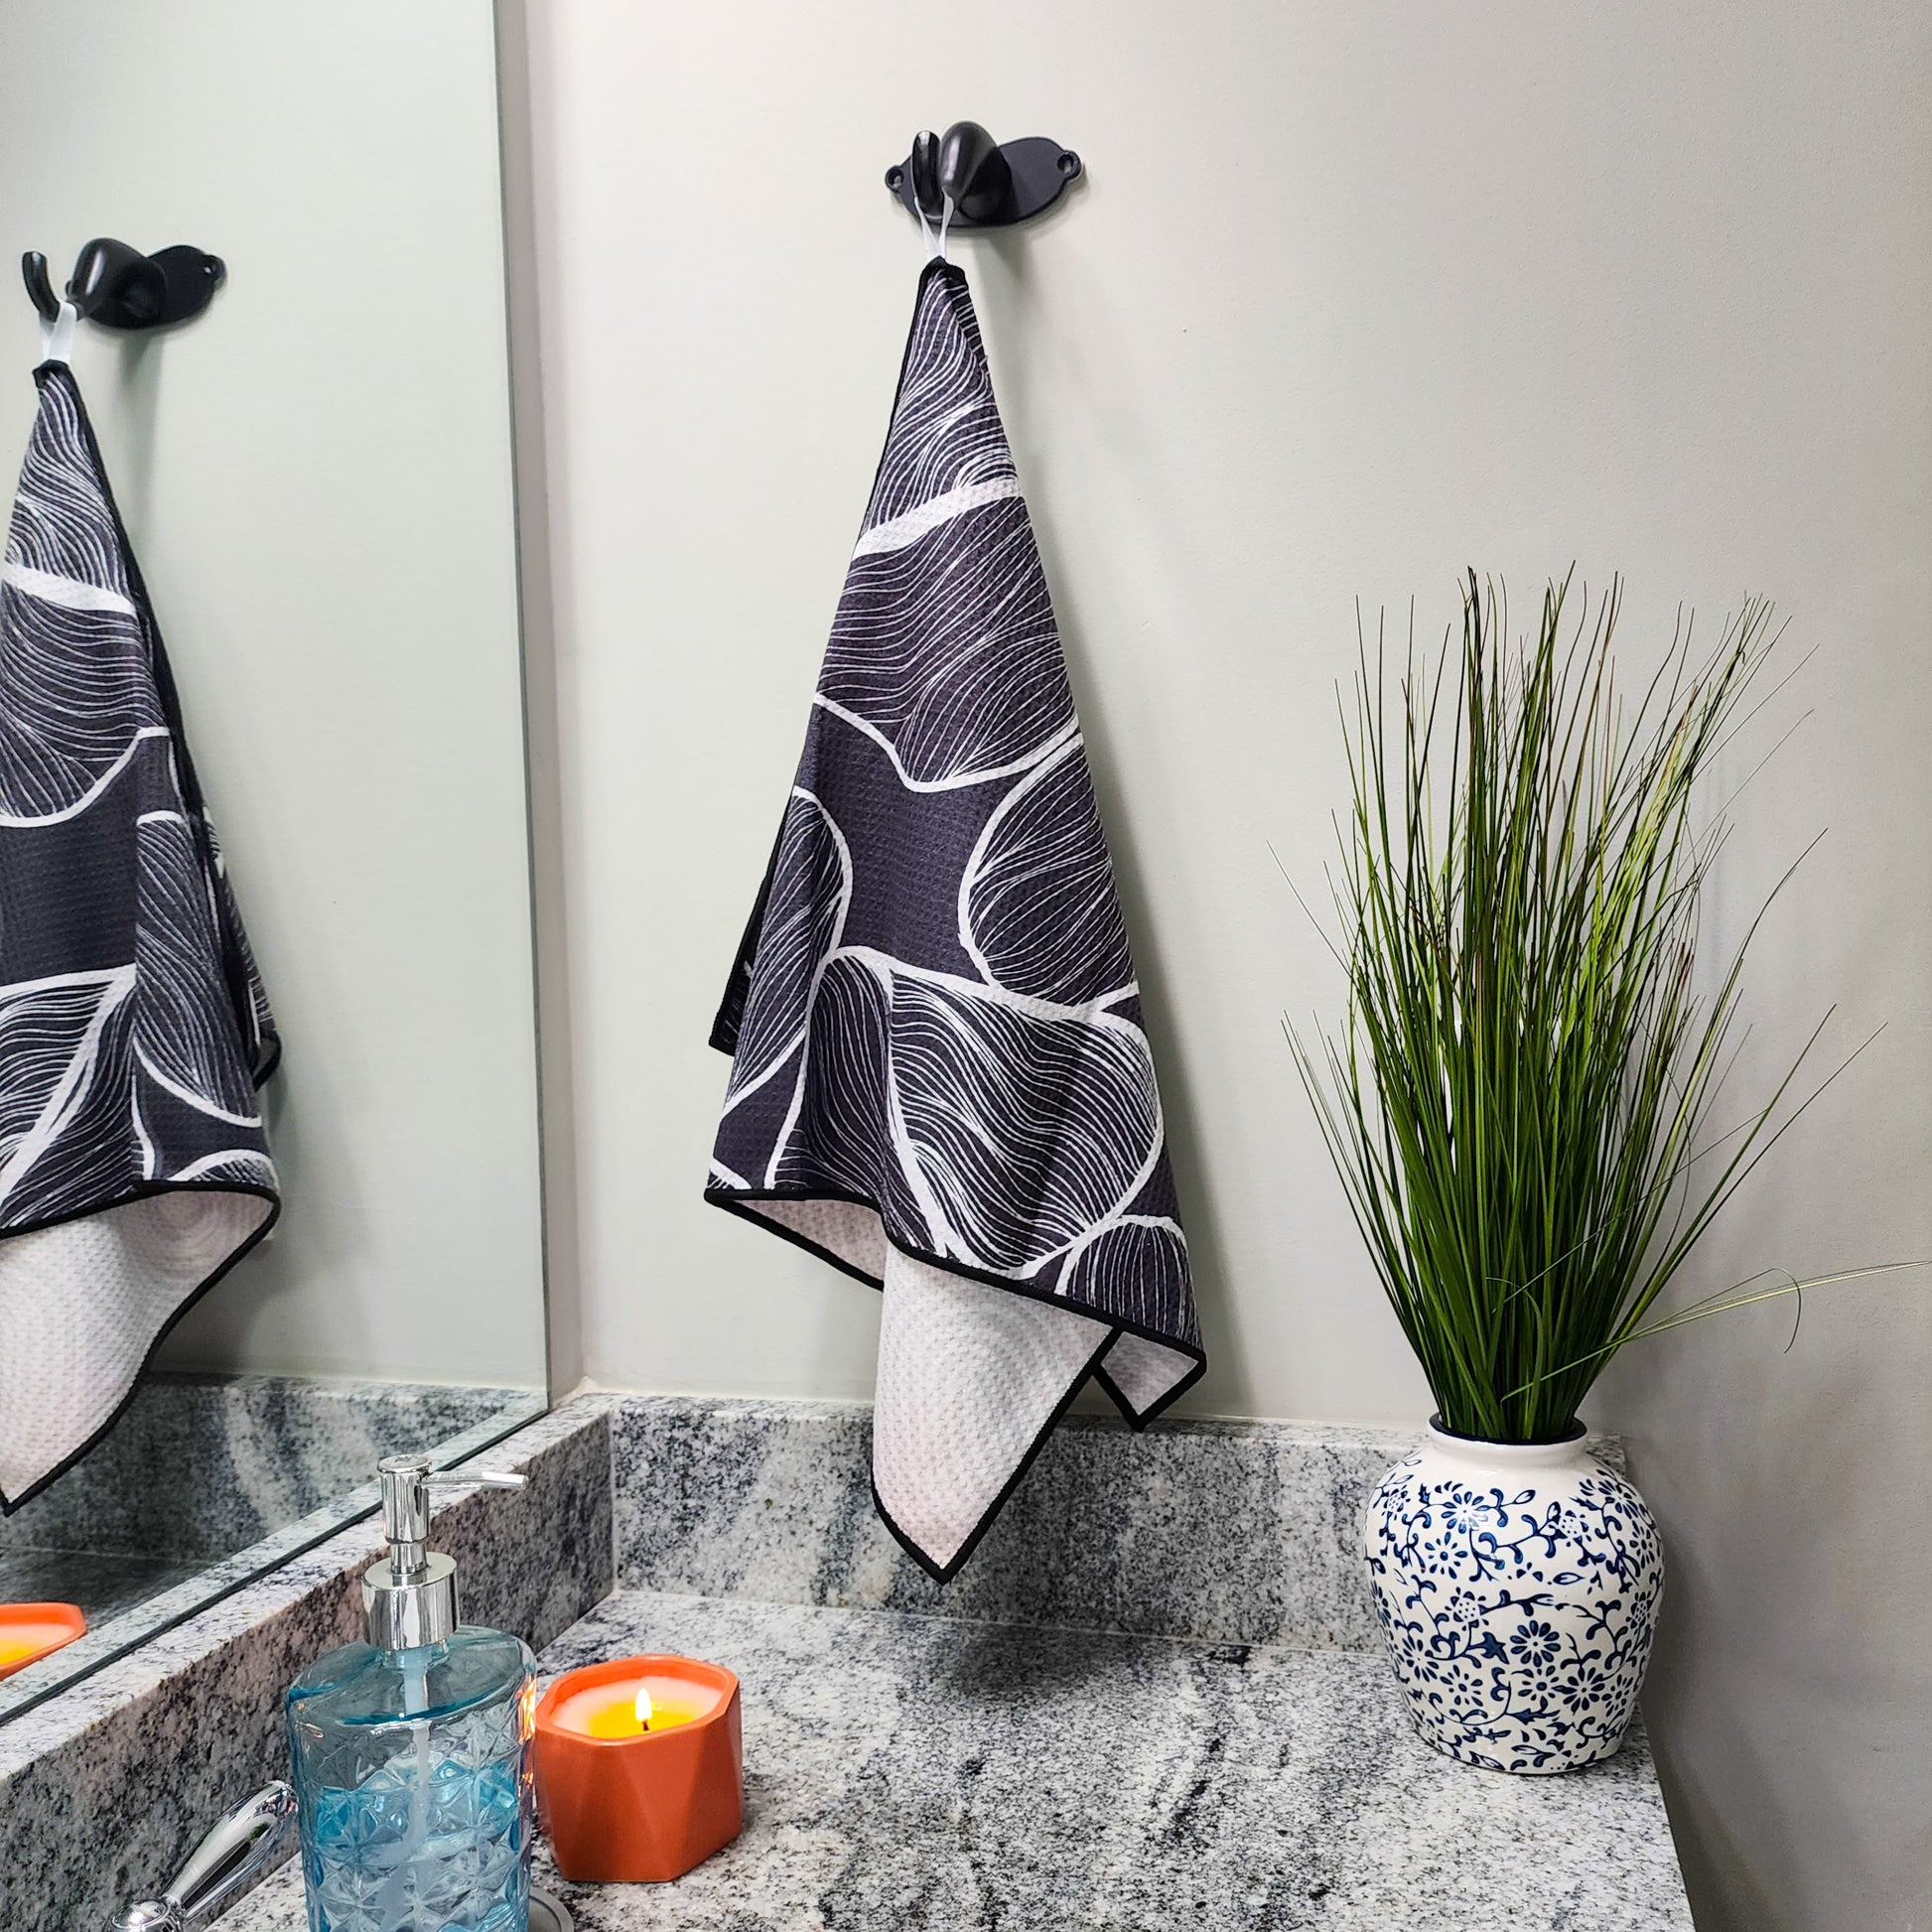 Waves - Kitchen Tea Towel & Hand towel – Buzzee